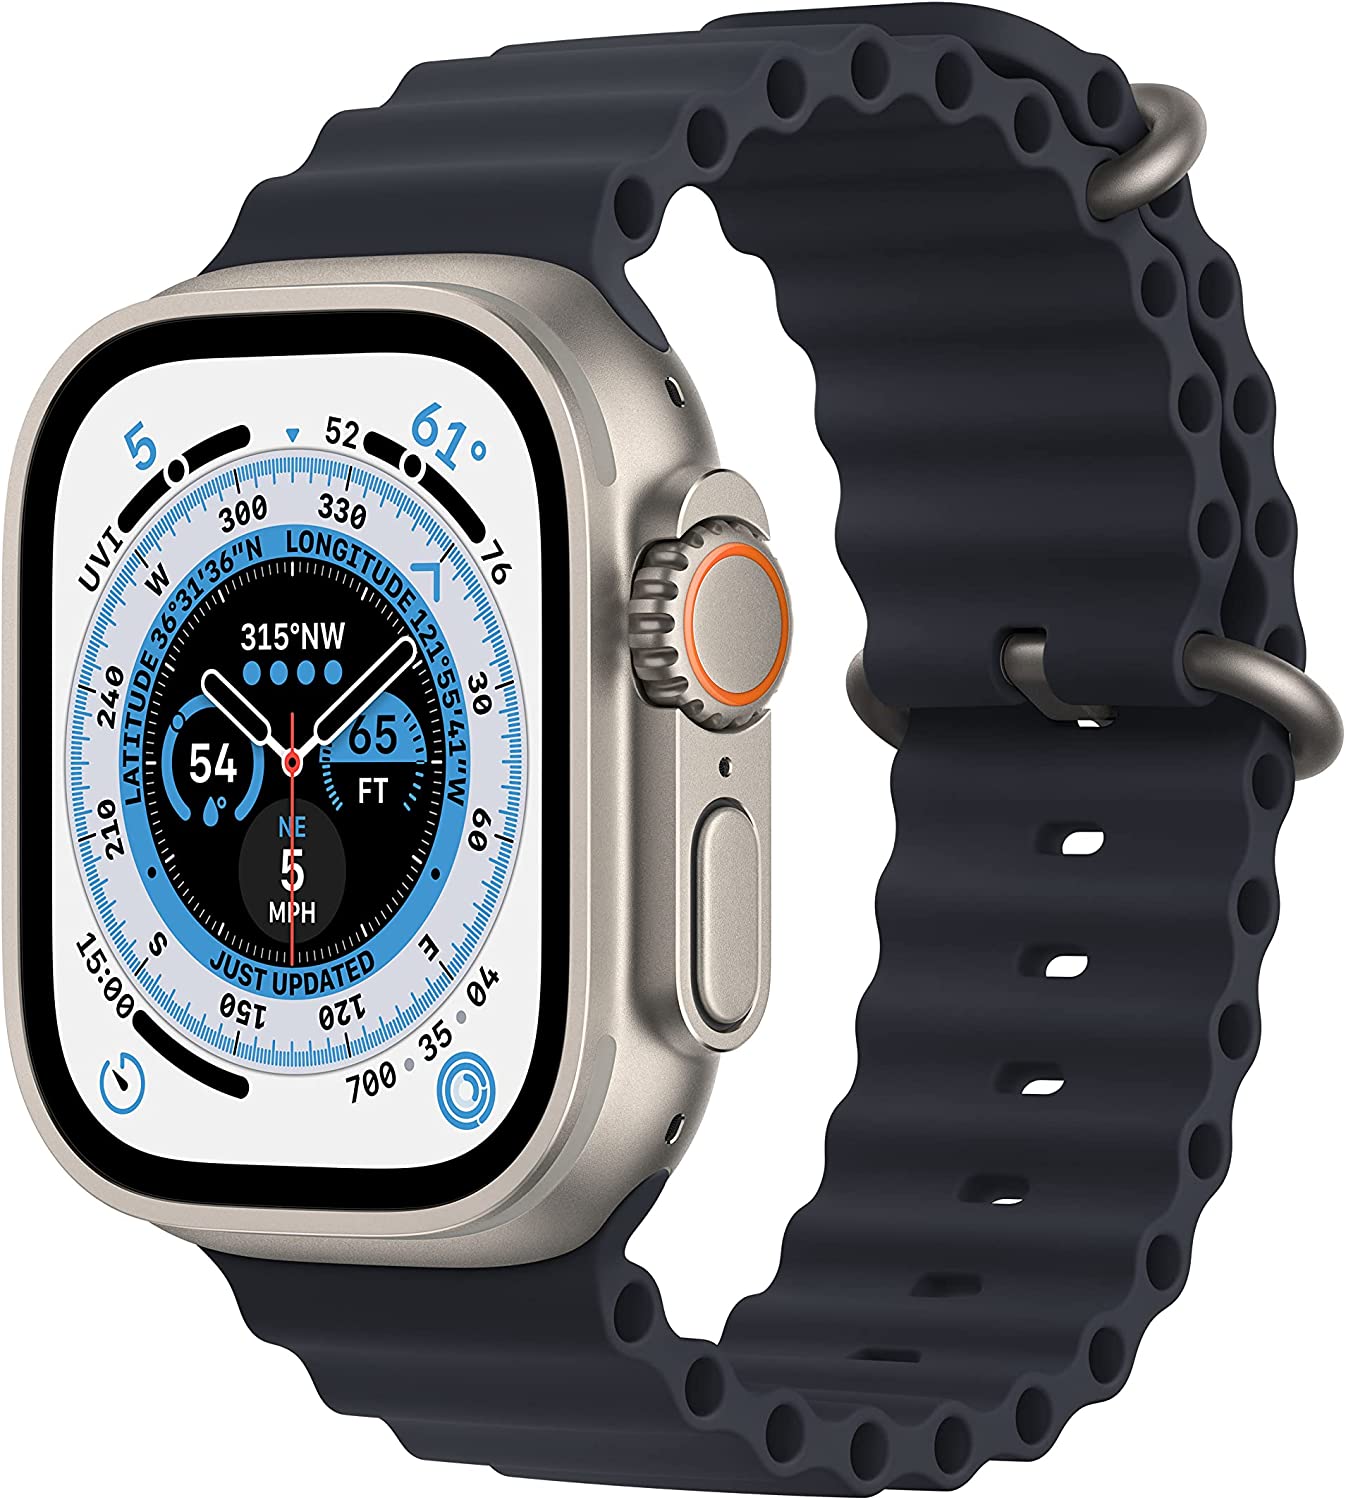 Apple Watch Ultra [GPS + Cellular 49mm] 스마트 워치 러그드 티타늄 케이스 & 미드나잇 오션 밴드 포함. 피트니스 트래커, 정밀 GPS, 동작 버튼, 배터리 수명 연장, 더 밝은 망막 디스플레이